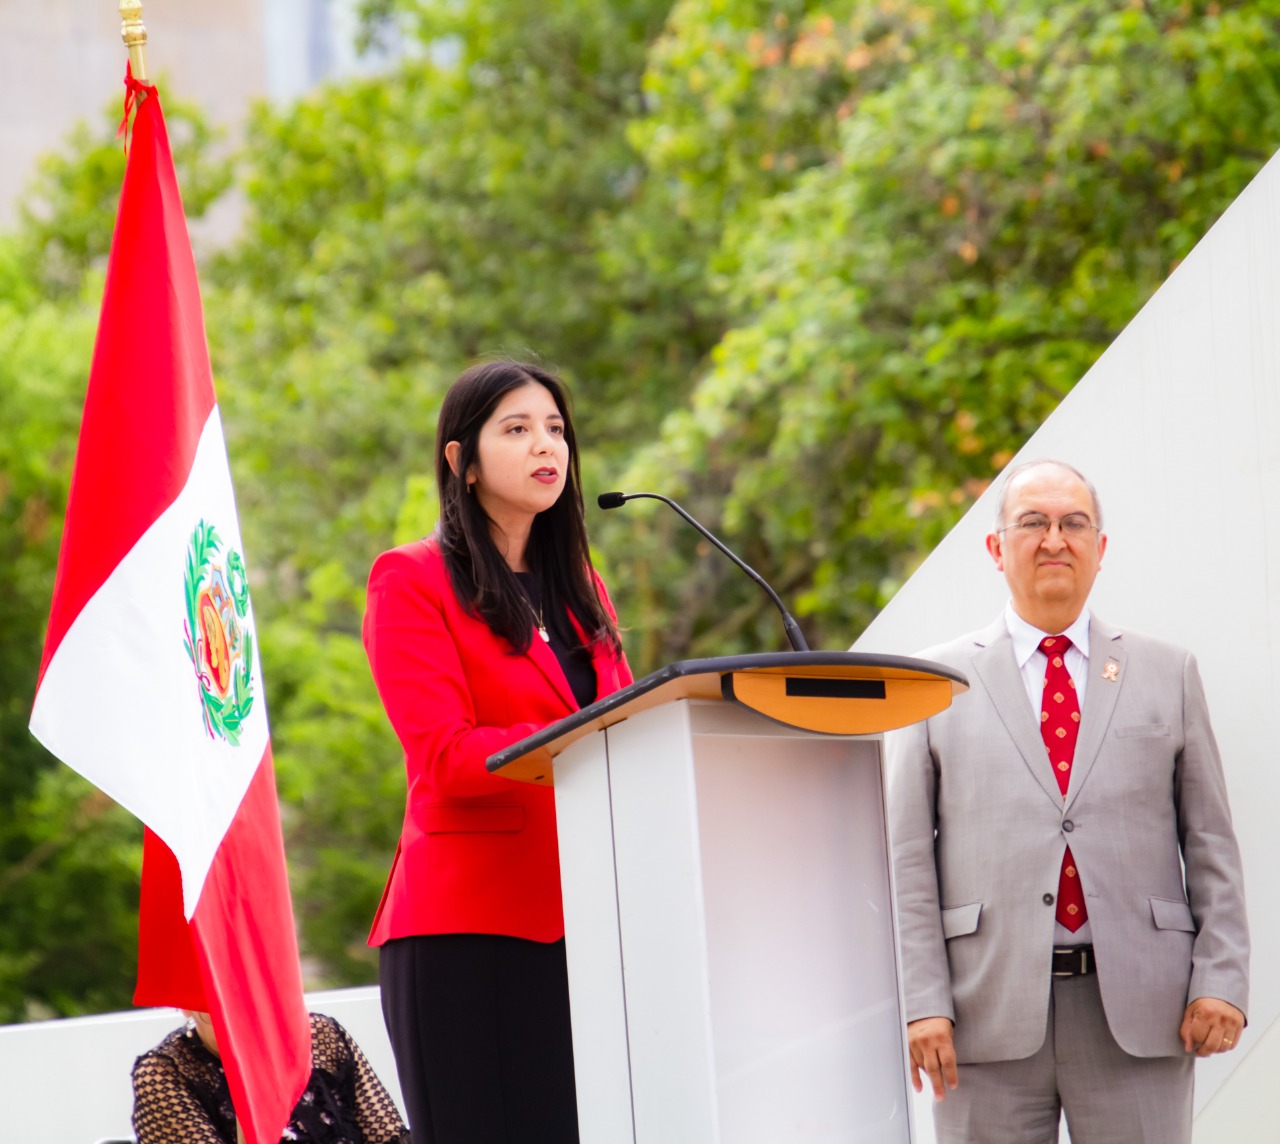 Gran celebración en el corazón de Toronto del Día de Independencia del Perú